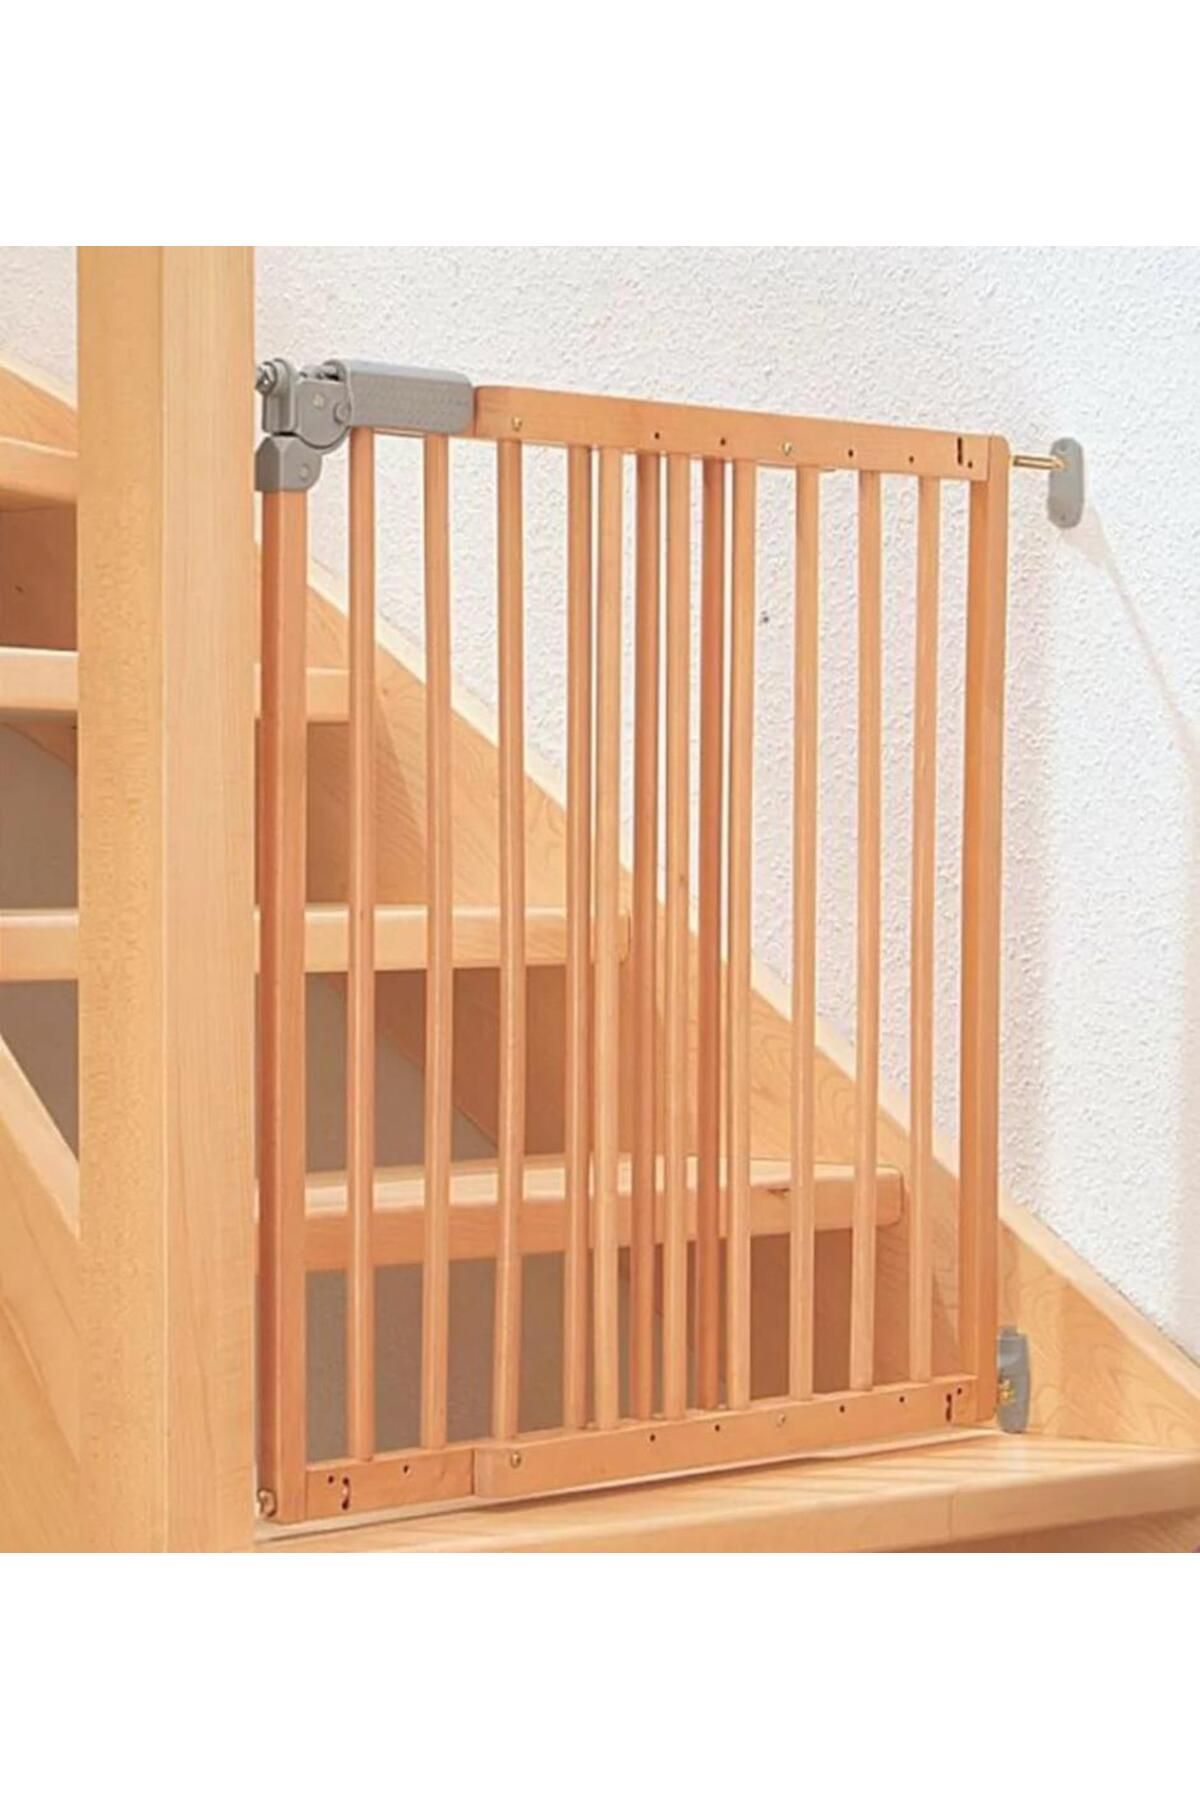 Nettekaçmaz Merdiven ve Kapı İçin Çocuk Koruma Güvenlik Kapısı 75,6-110,4 cm Ayarlanabilir